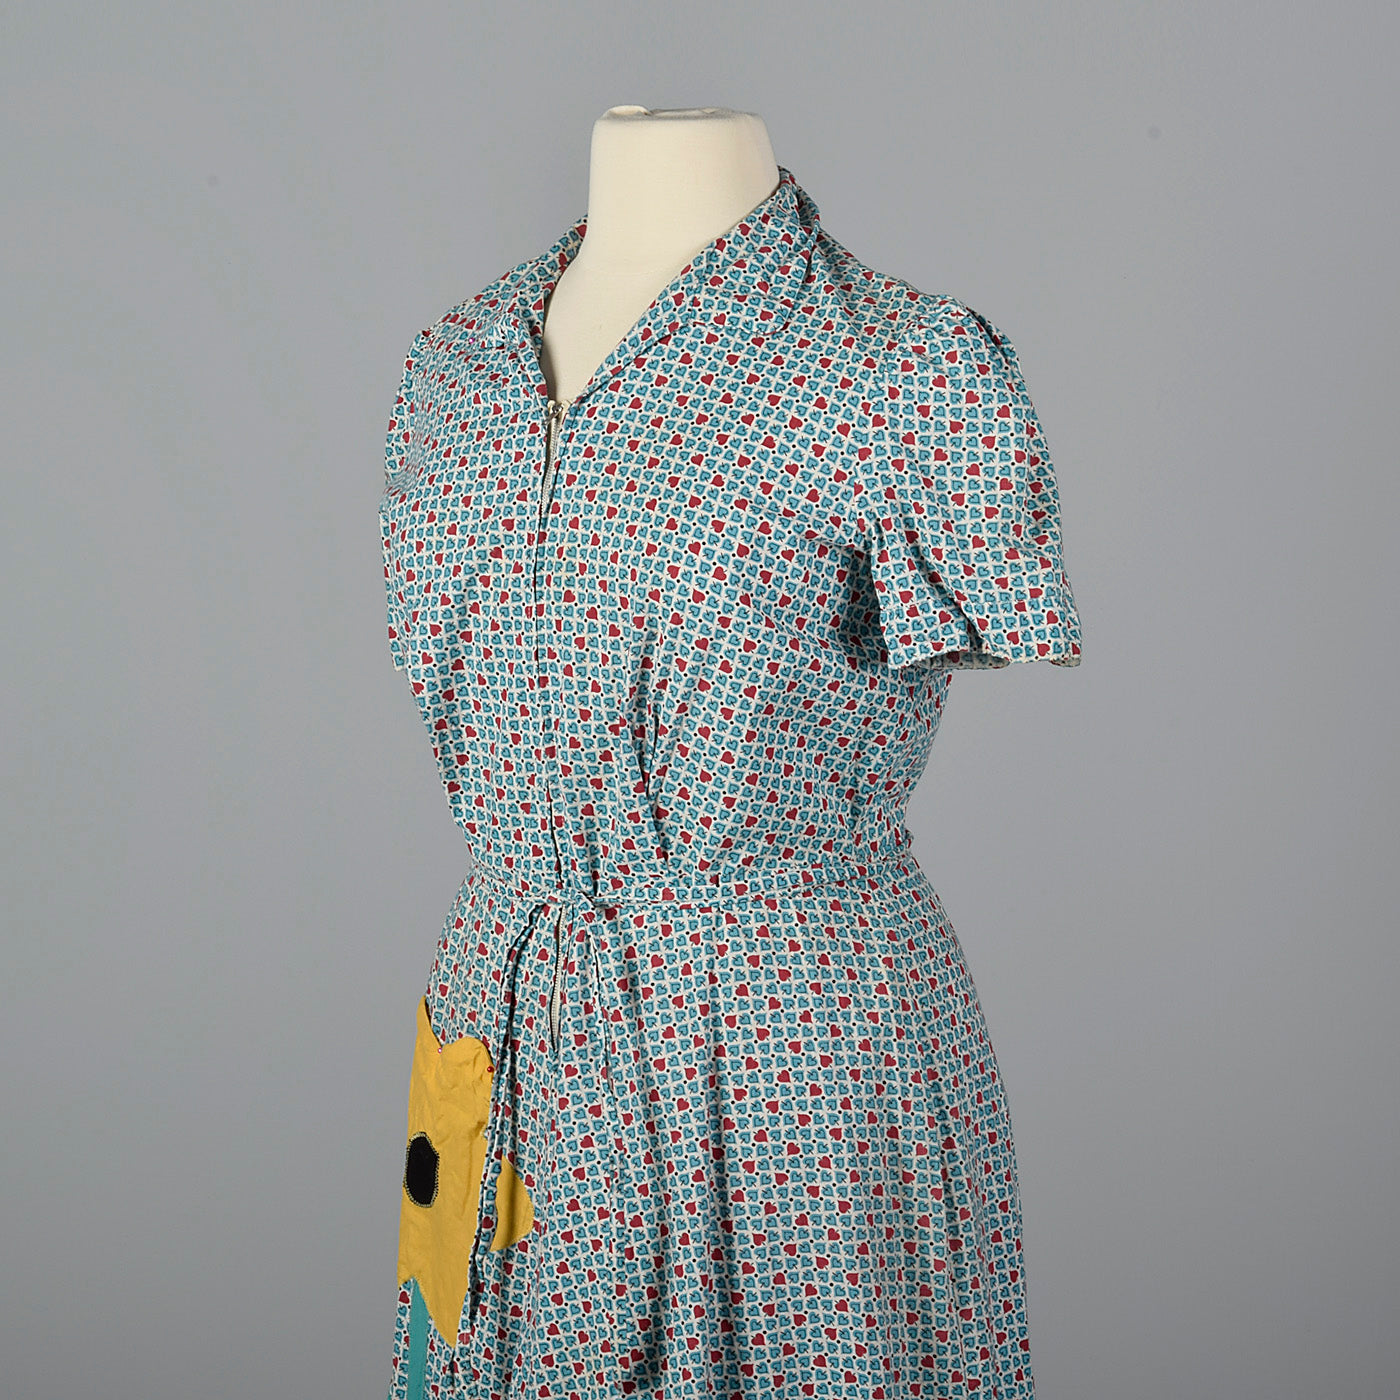 XXL 1950s Novelty Print Cotton Day Dress